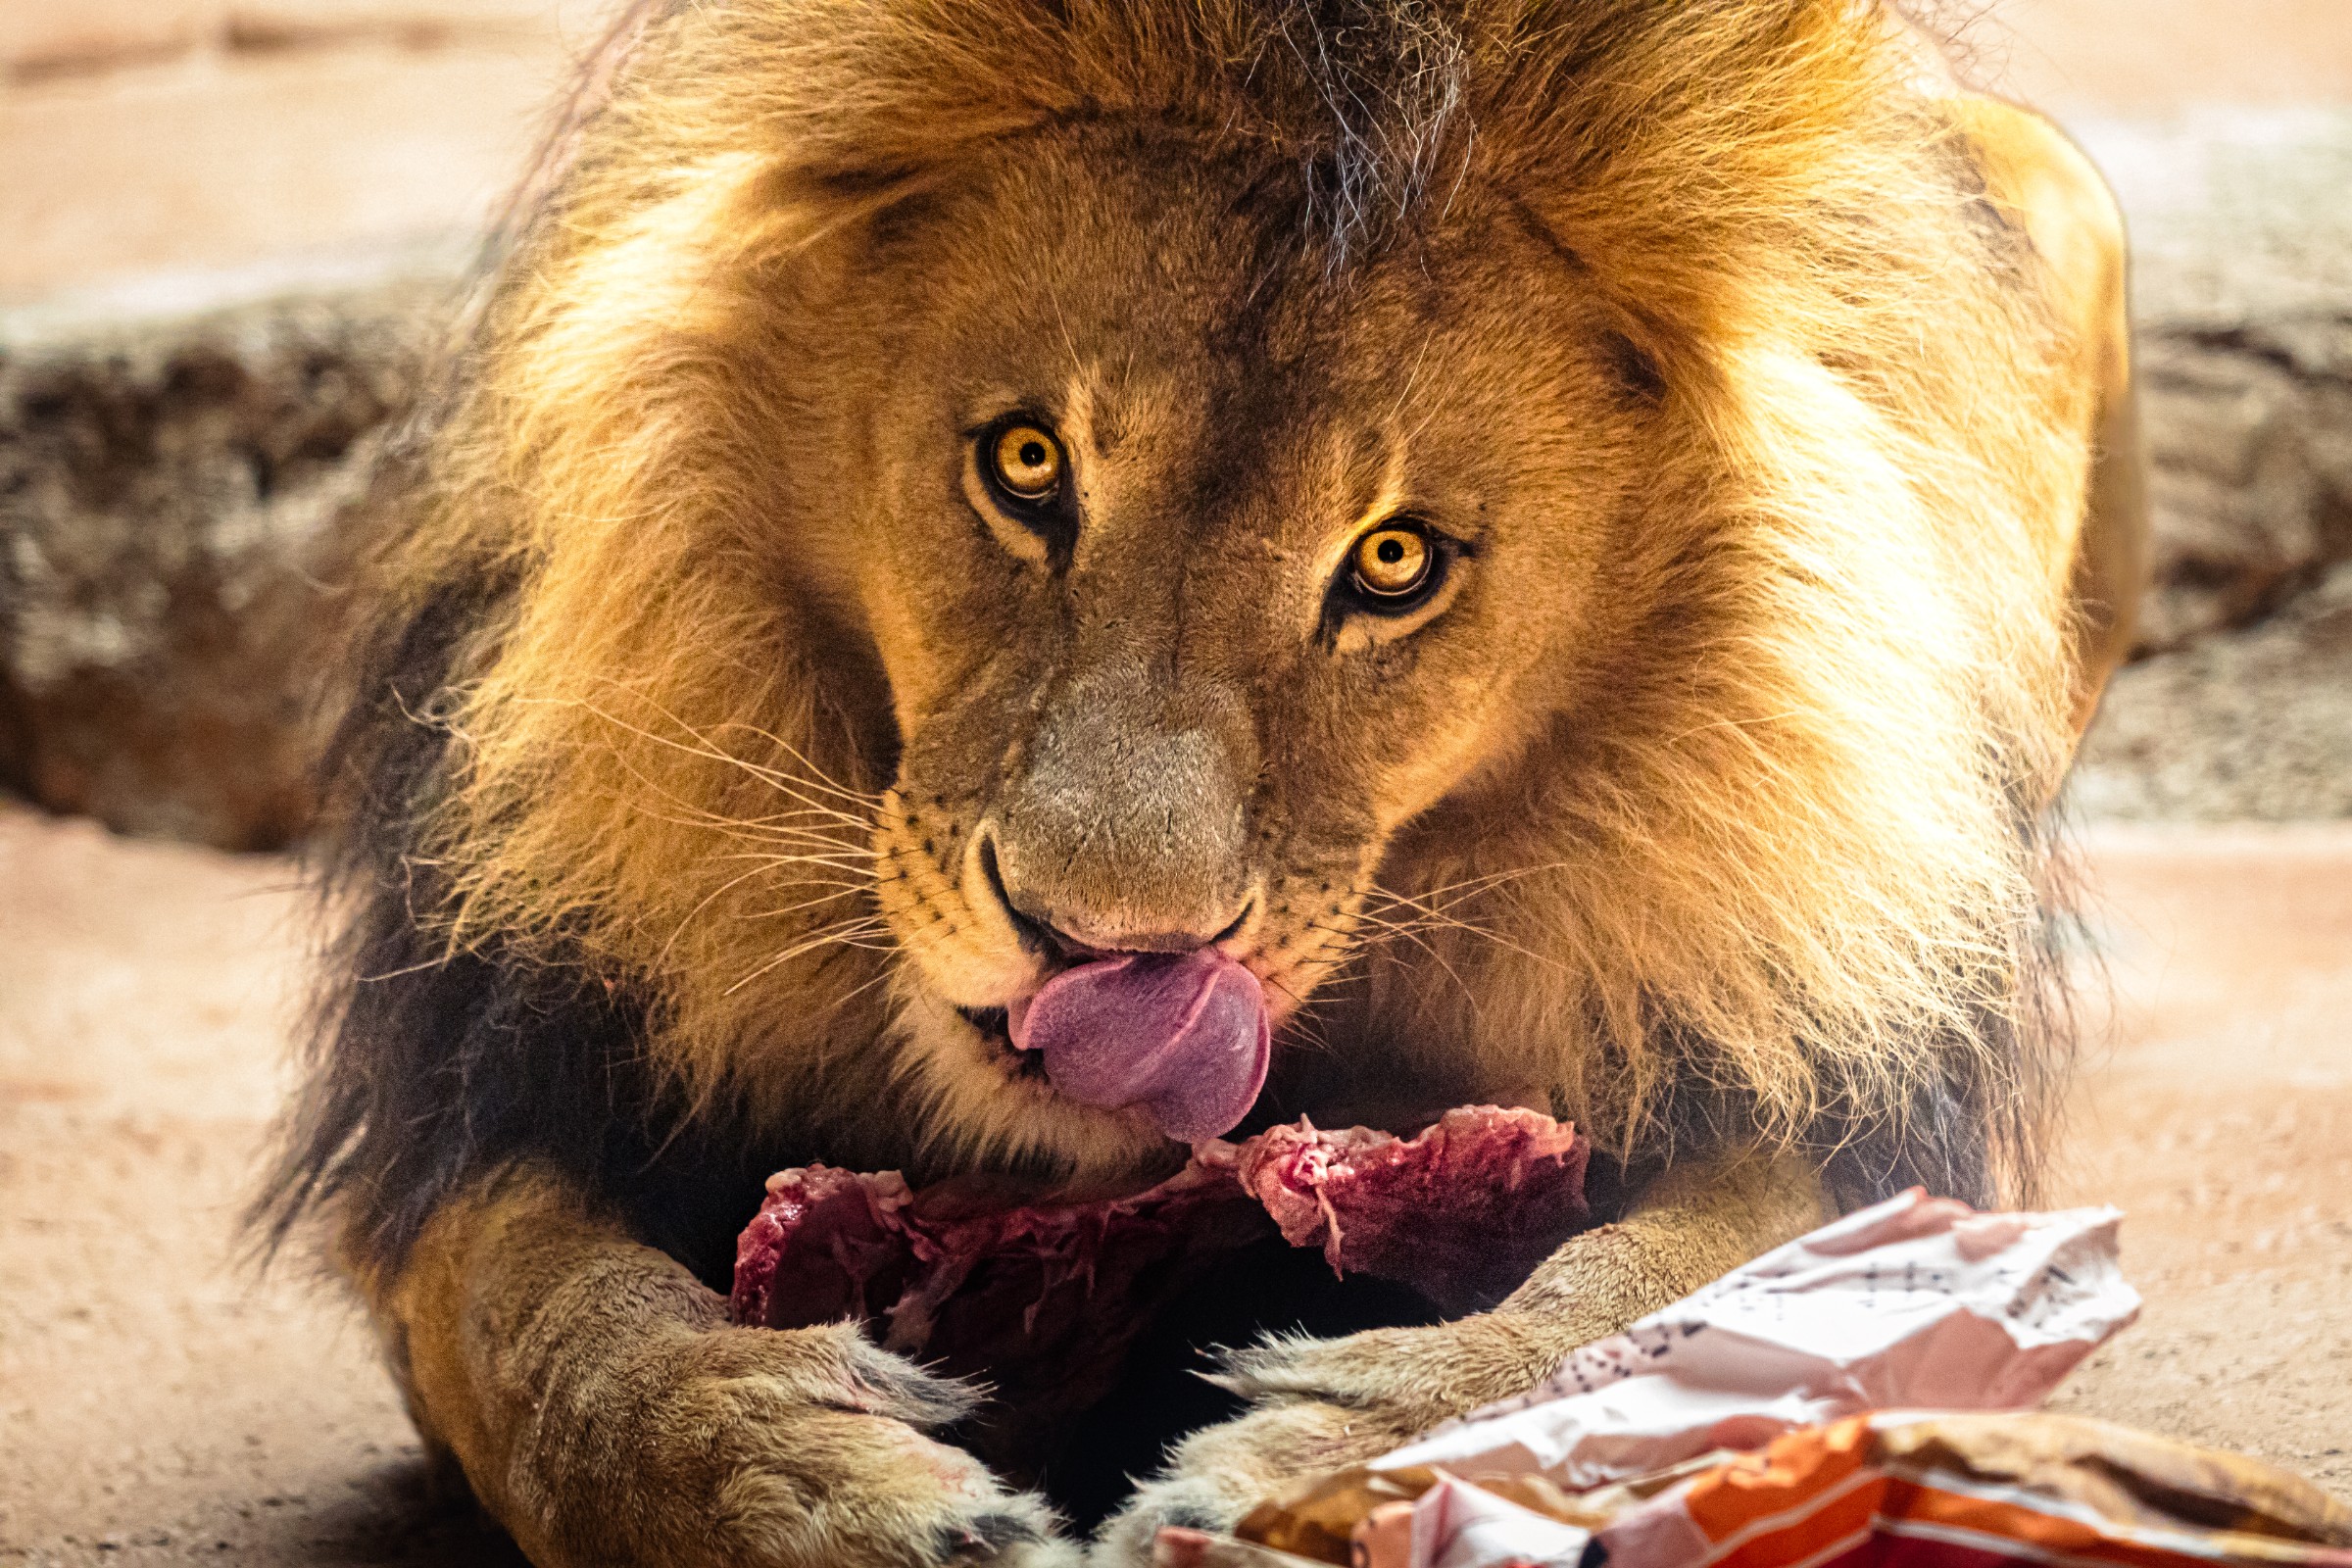 eating-lion.jpg